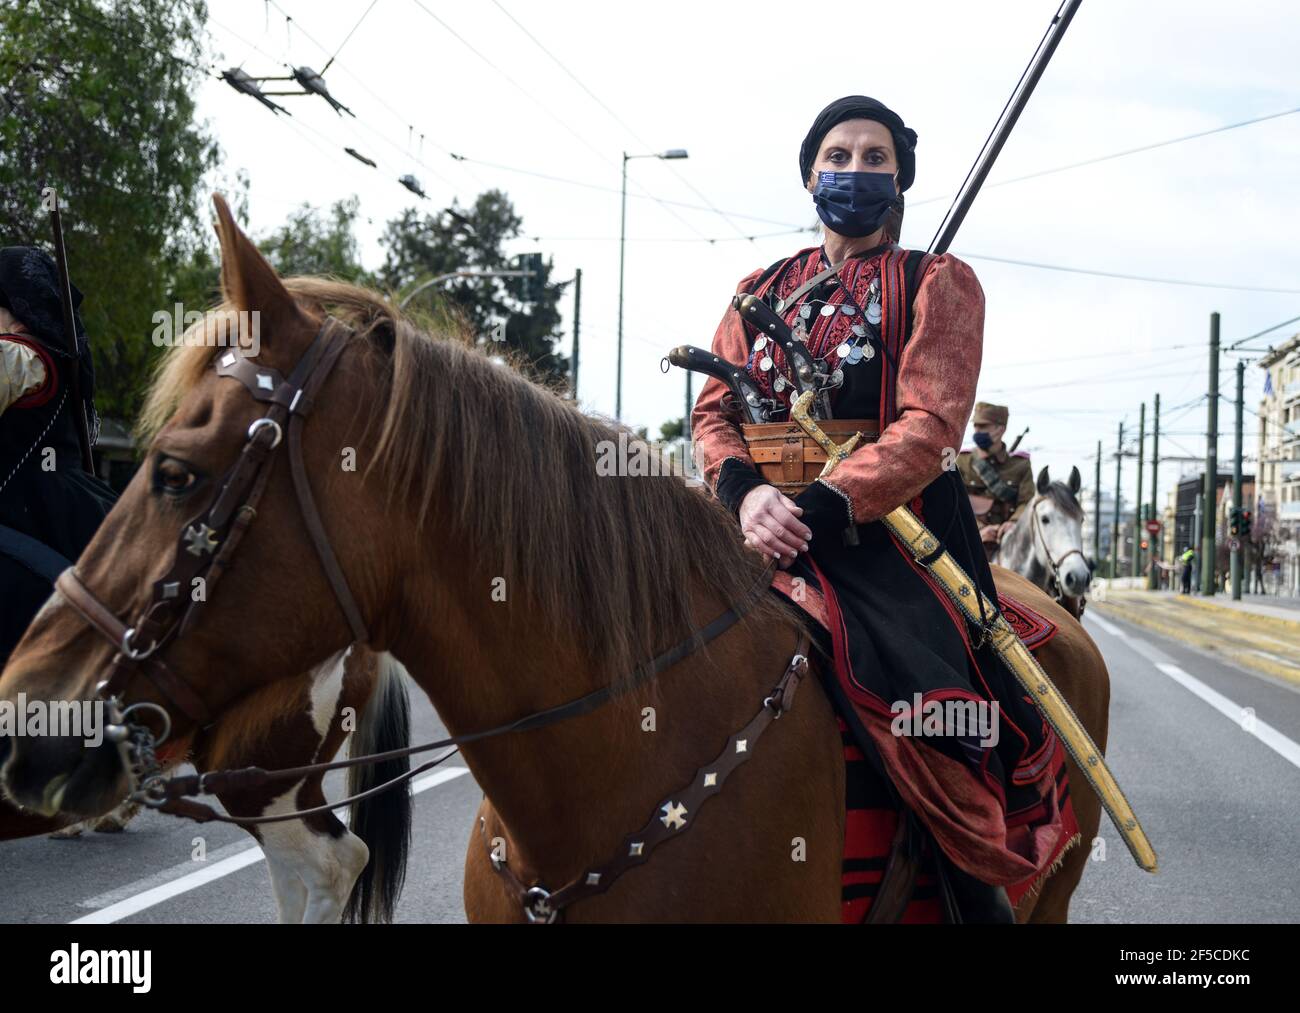 Weibliche Kavallerie Kämpfer in Tracht der griechischen Revolution 1821. Zweihundertjähriger Unabhängigkeitstag Militärparade in Athen. Stockfoto